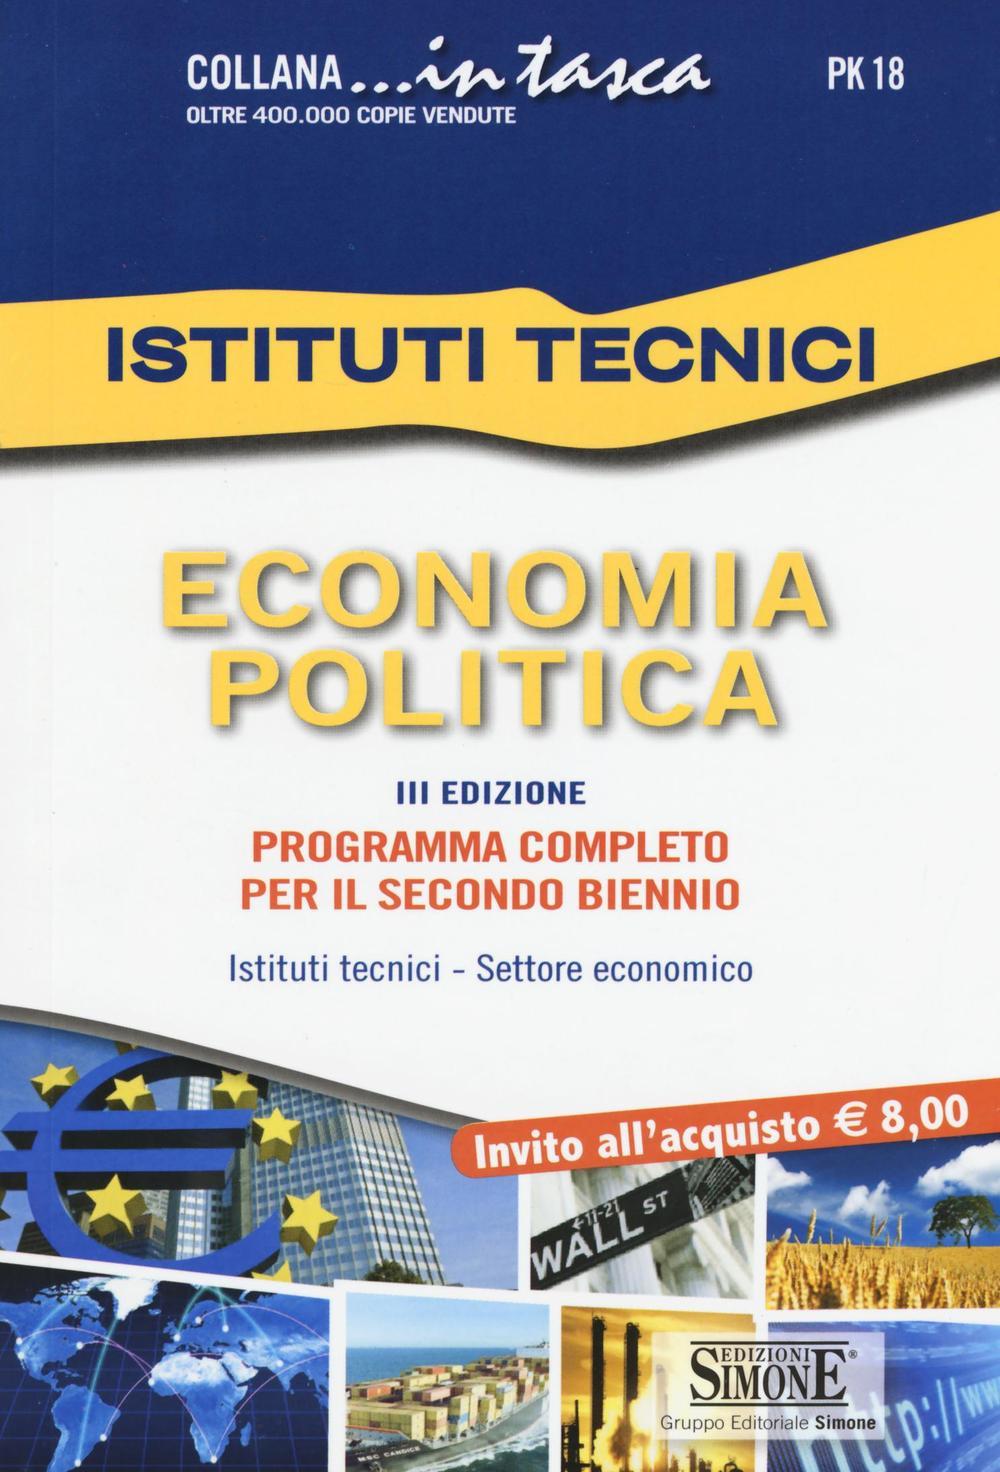 Istituti Tecnici - Economia politica - PK18